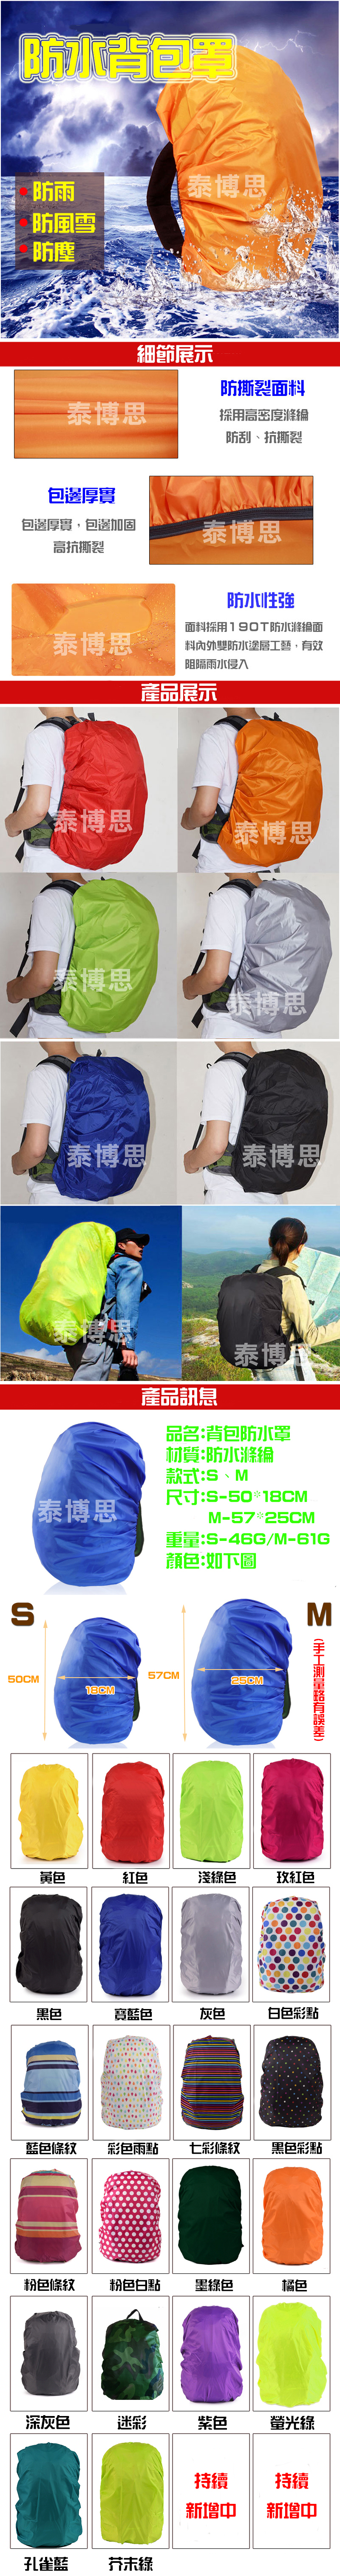 【泰博思】 防水背包罩 戶外背包罩 防水套 防雨罩 防塵罩 保護罩 S【H051】